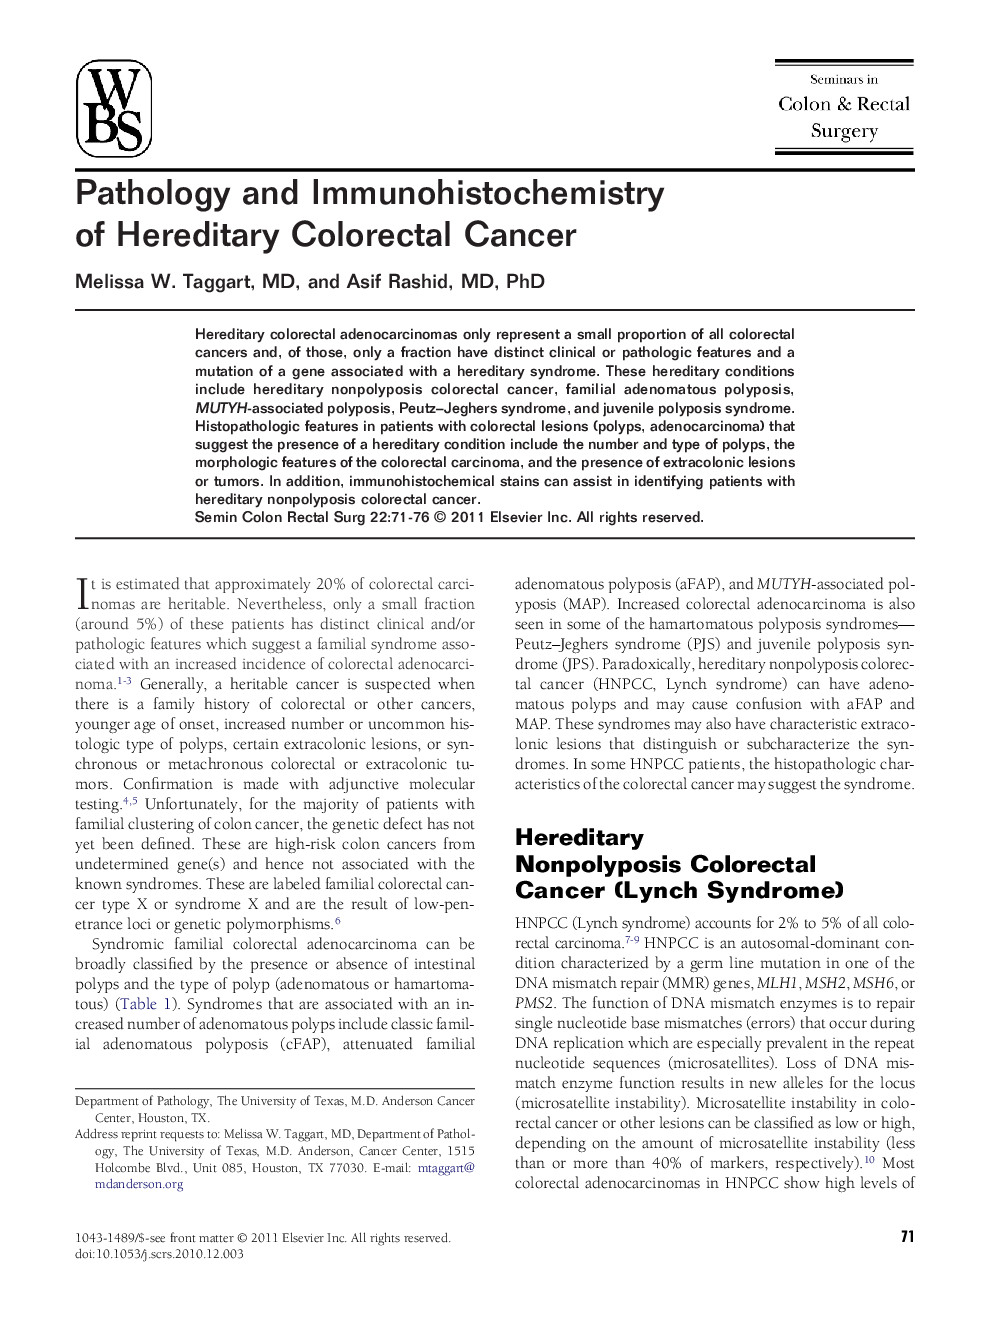 Pathology and Immunohistochemistry of Hereditary Colorectal Cancer